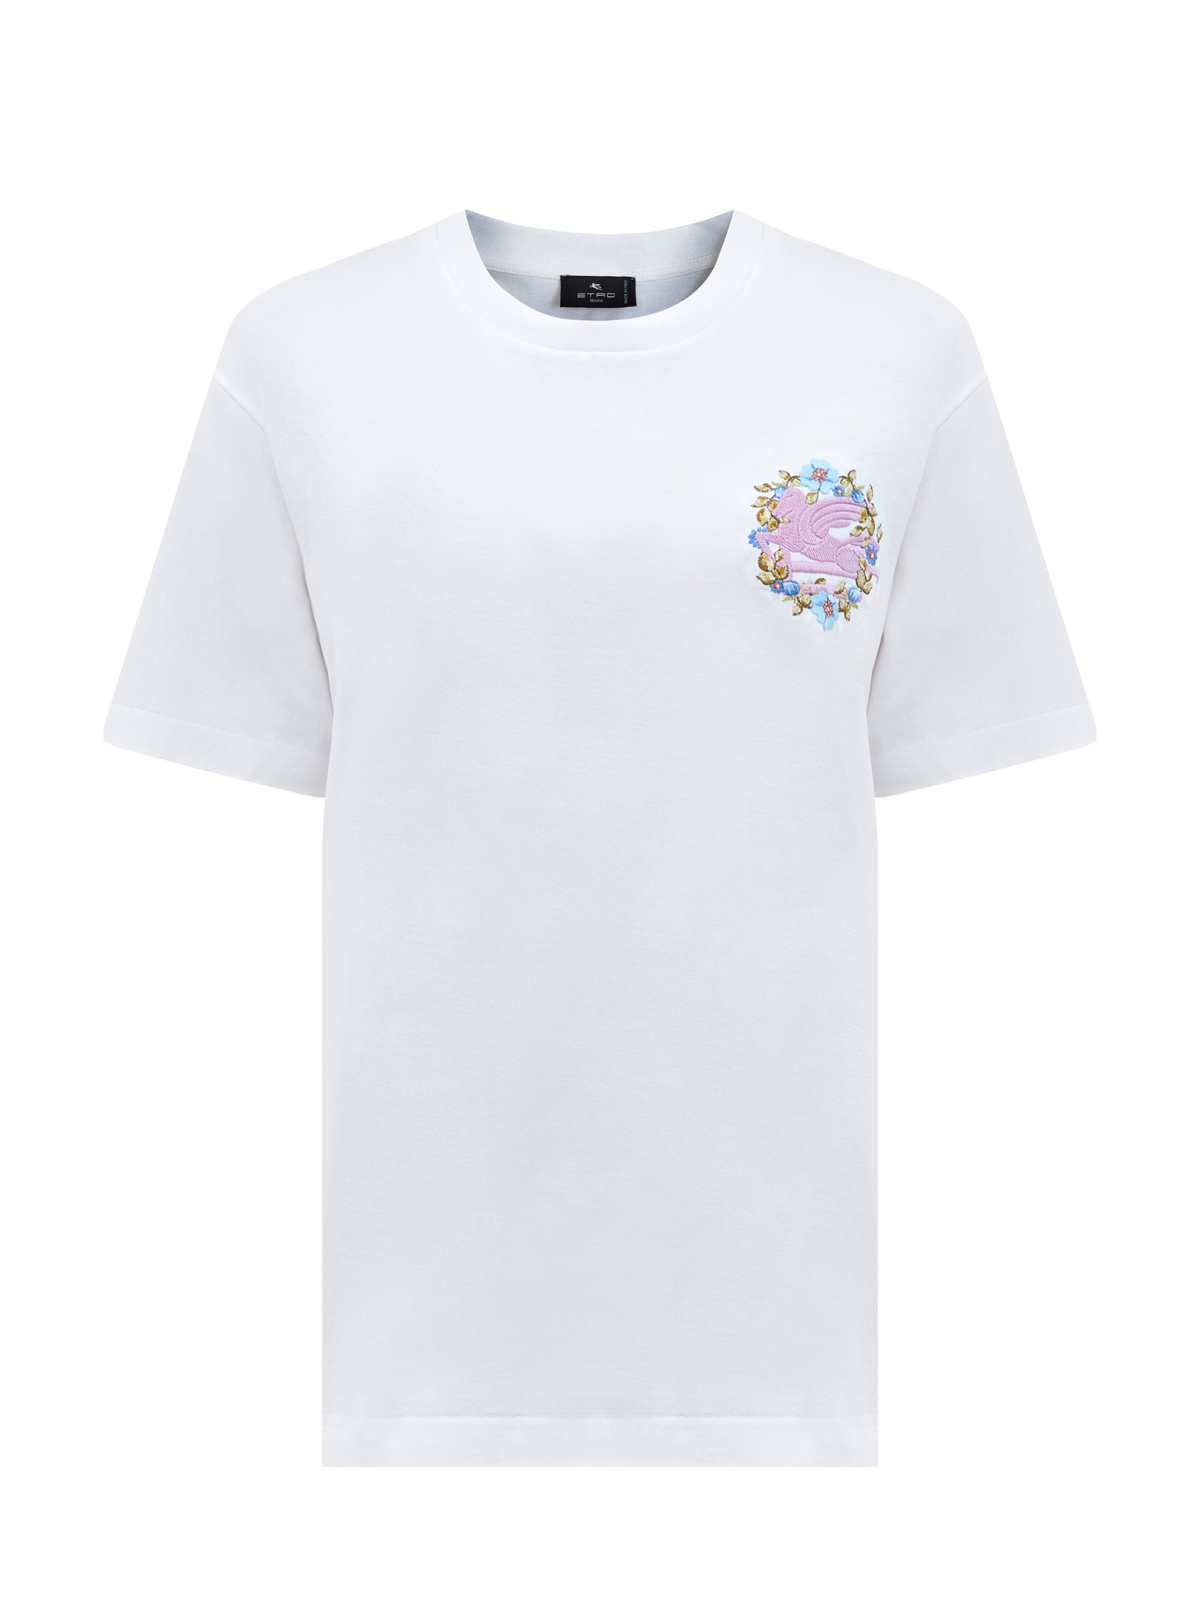 Свободная футболка из хлопка джерси с вышитым логотипом ETRO, цвет мульти, размер 38;40;42;44